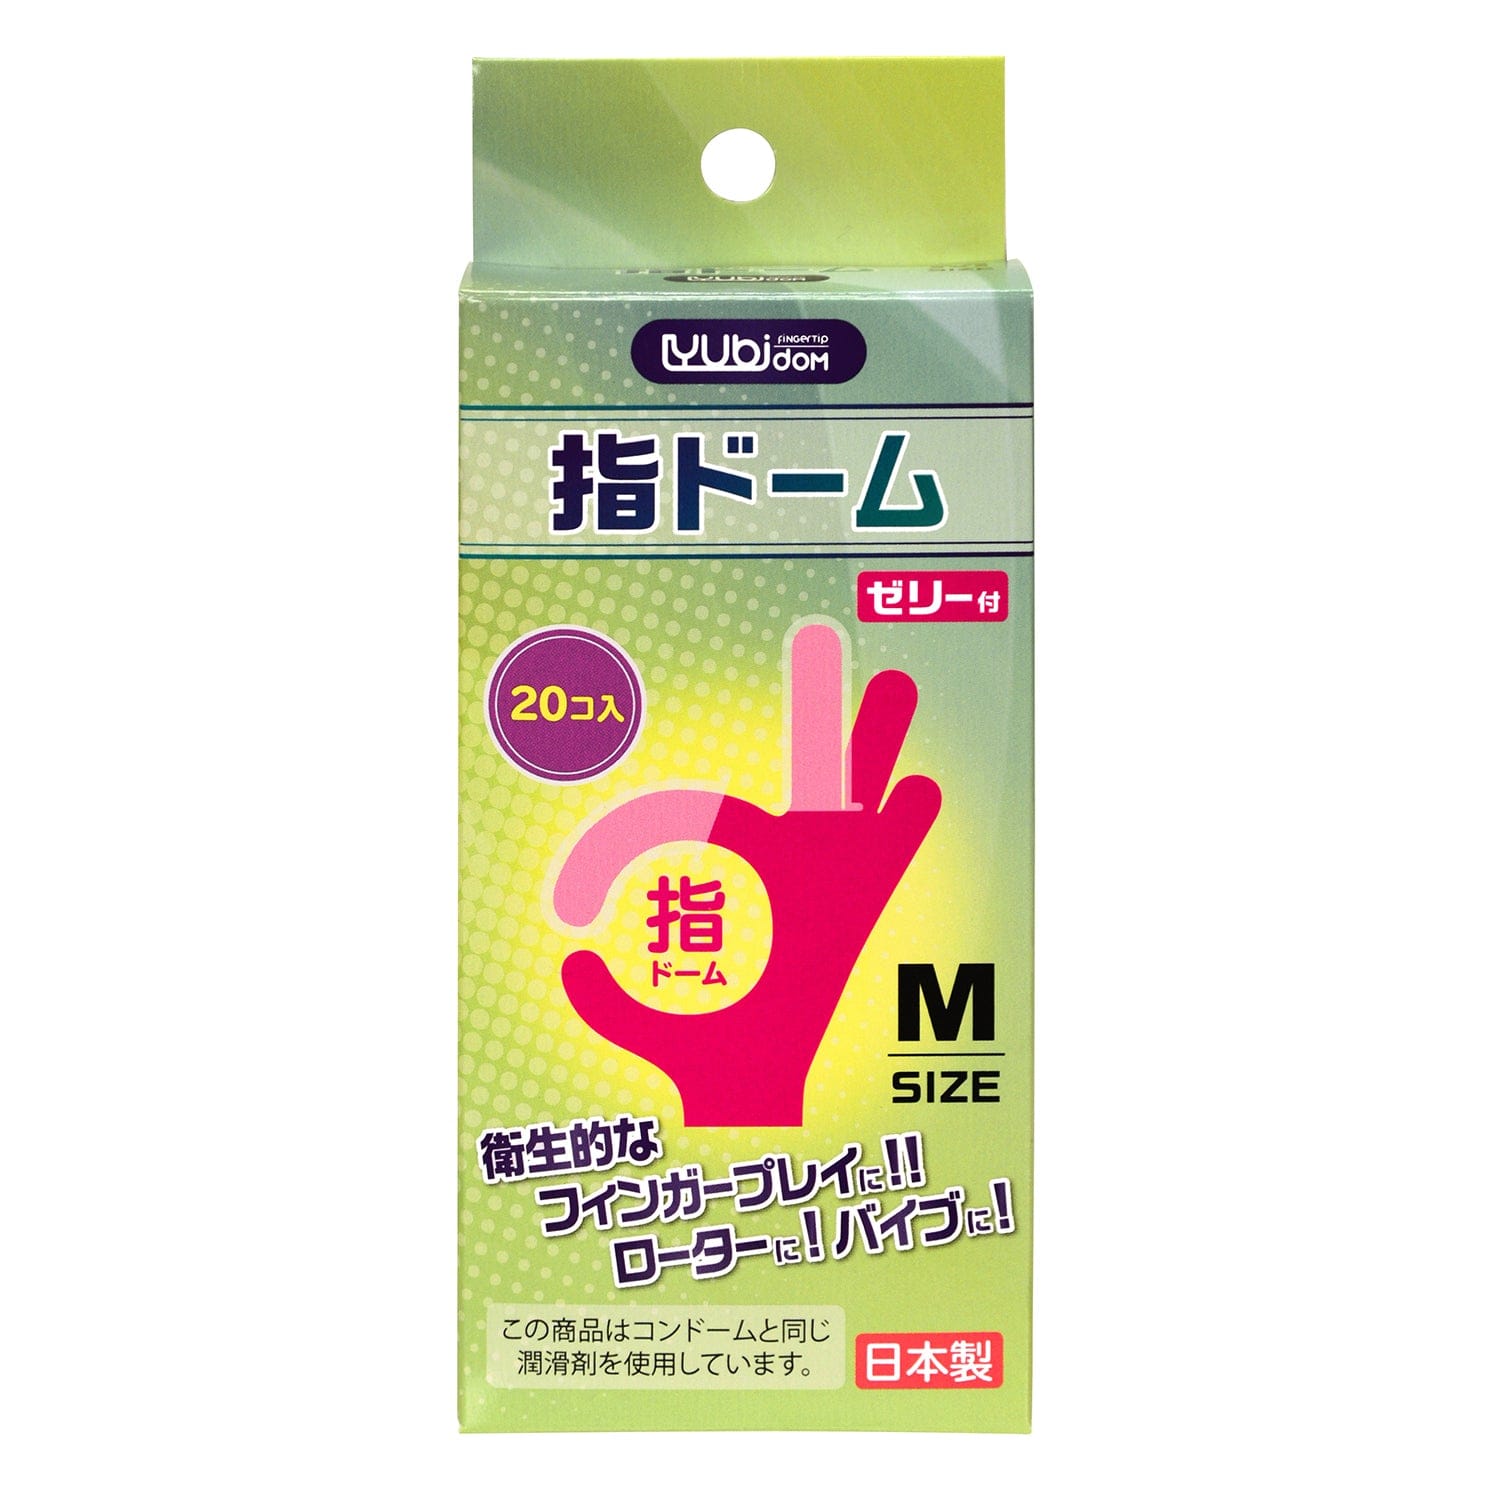 SSI Japan - Finger Sack Dome 20 pieces M (Clear) -  Novelties (Non Vibration)  Durio.sg